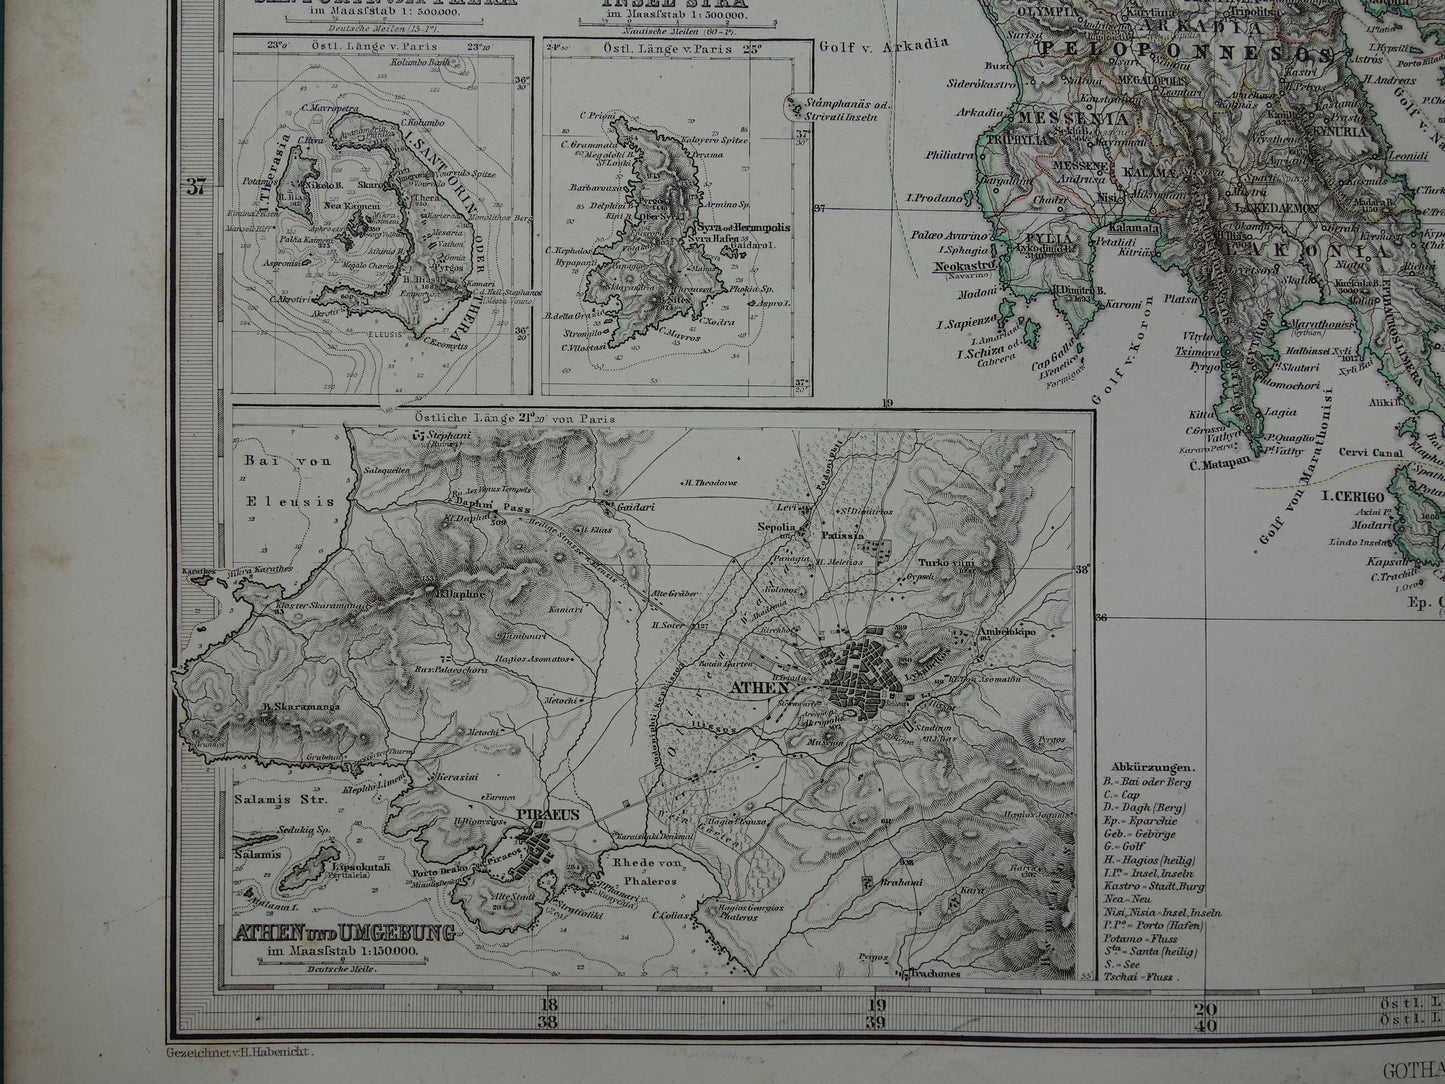 155+ jaar oude landkaart van Griekenland originele antieke kaart uit 1868 vintage kaarten Athene Piraeus